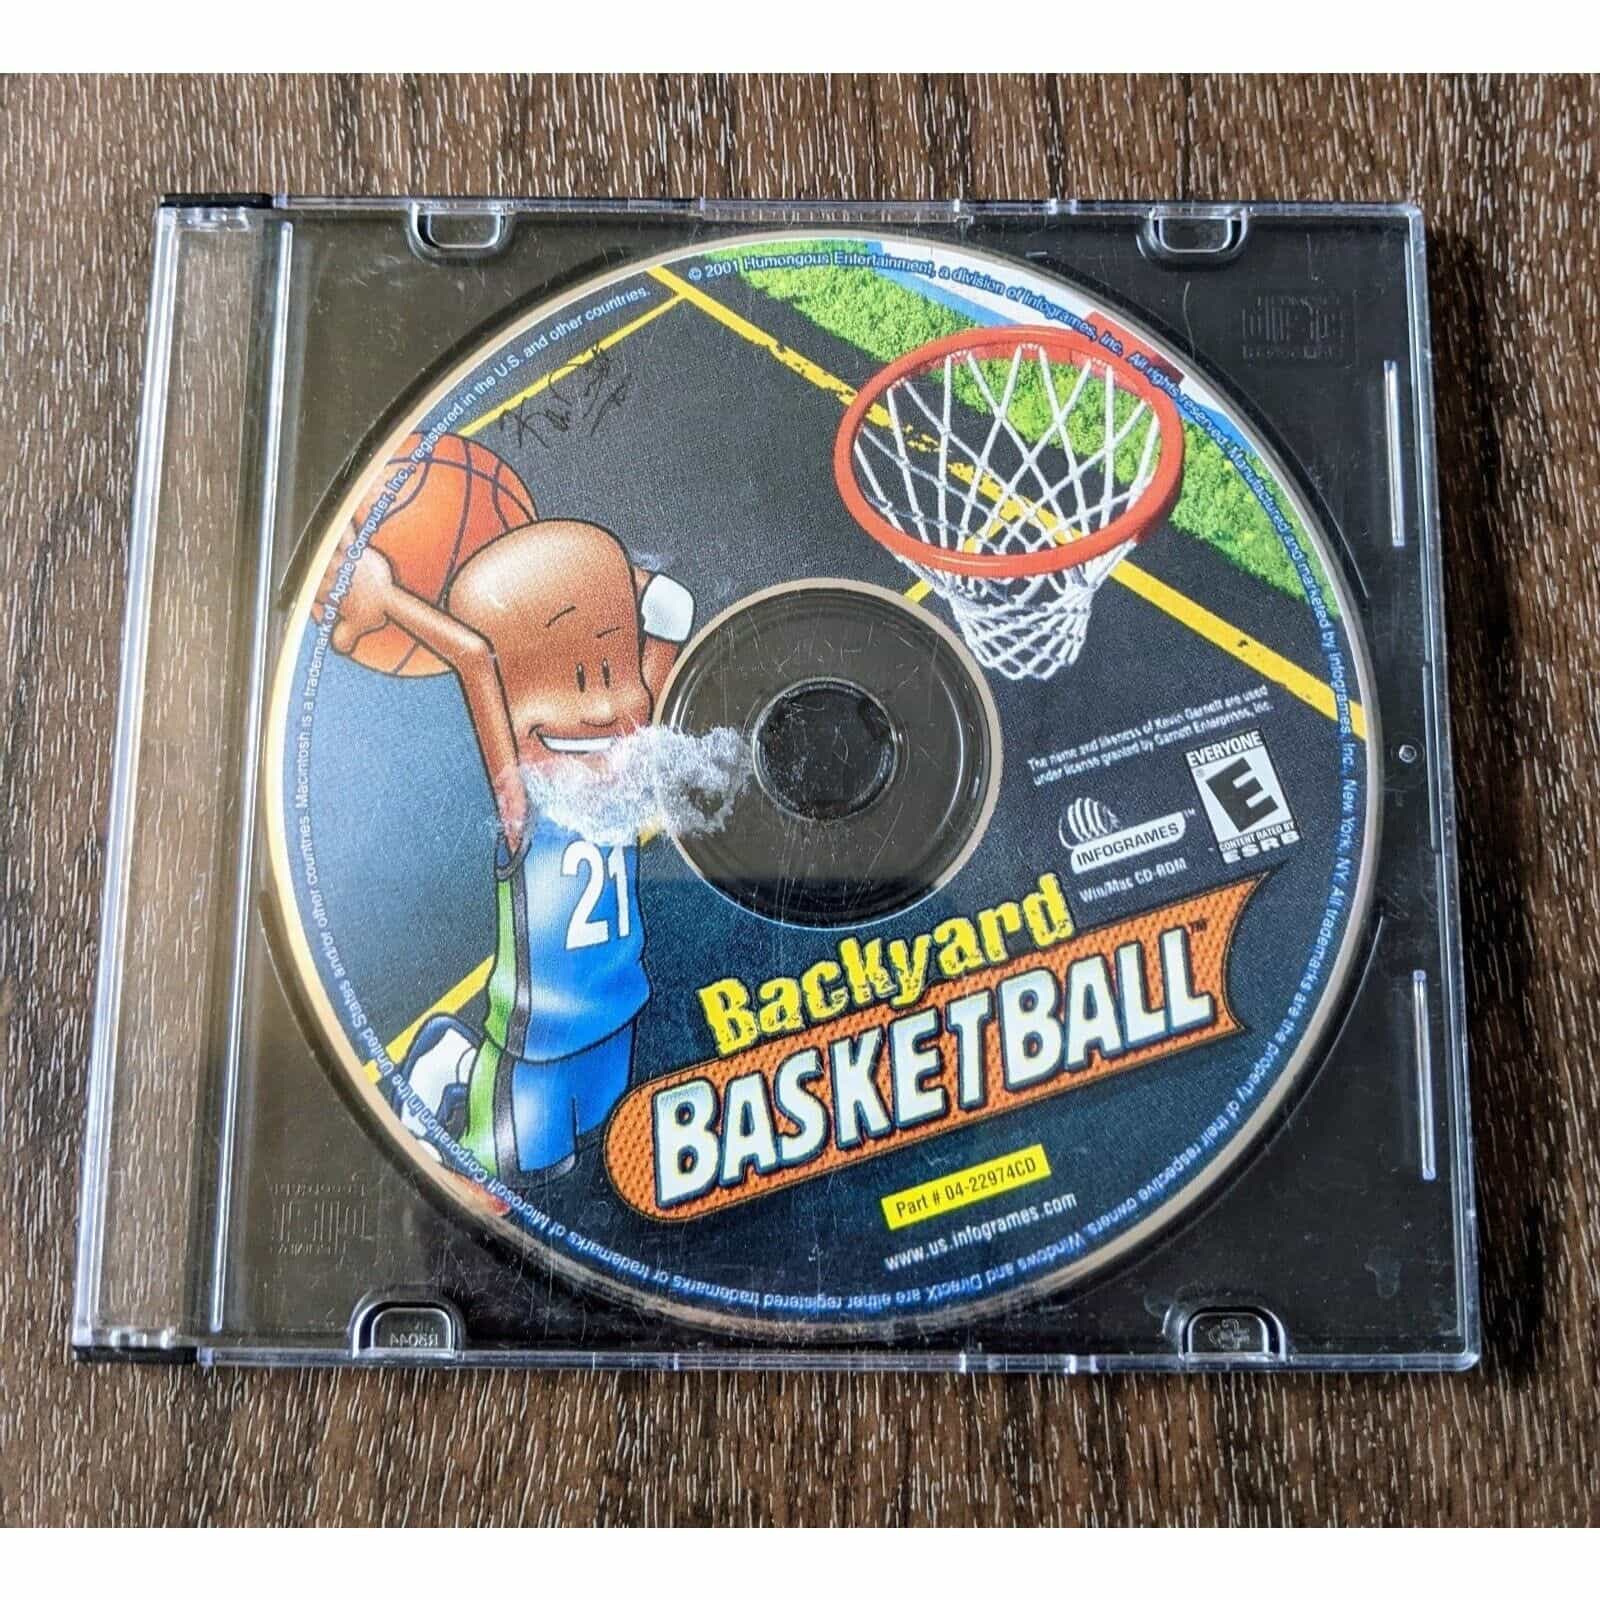 Backyard Basketball PC Game